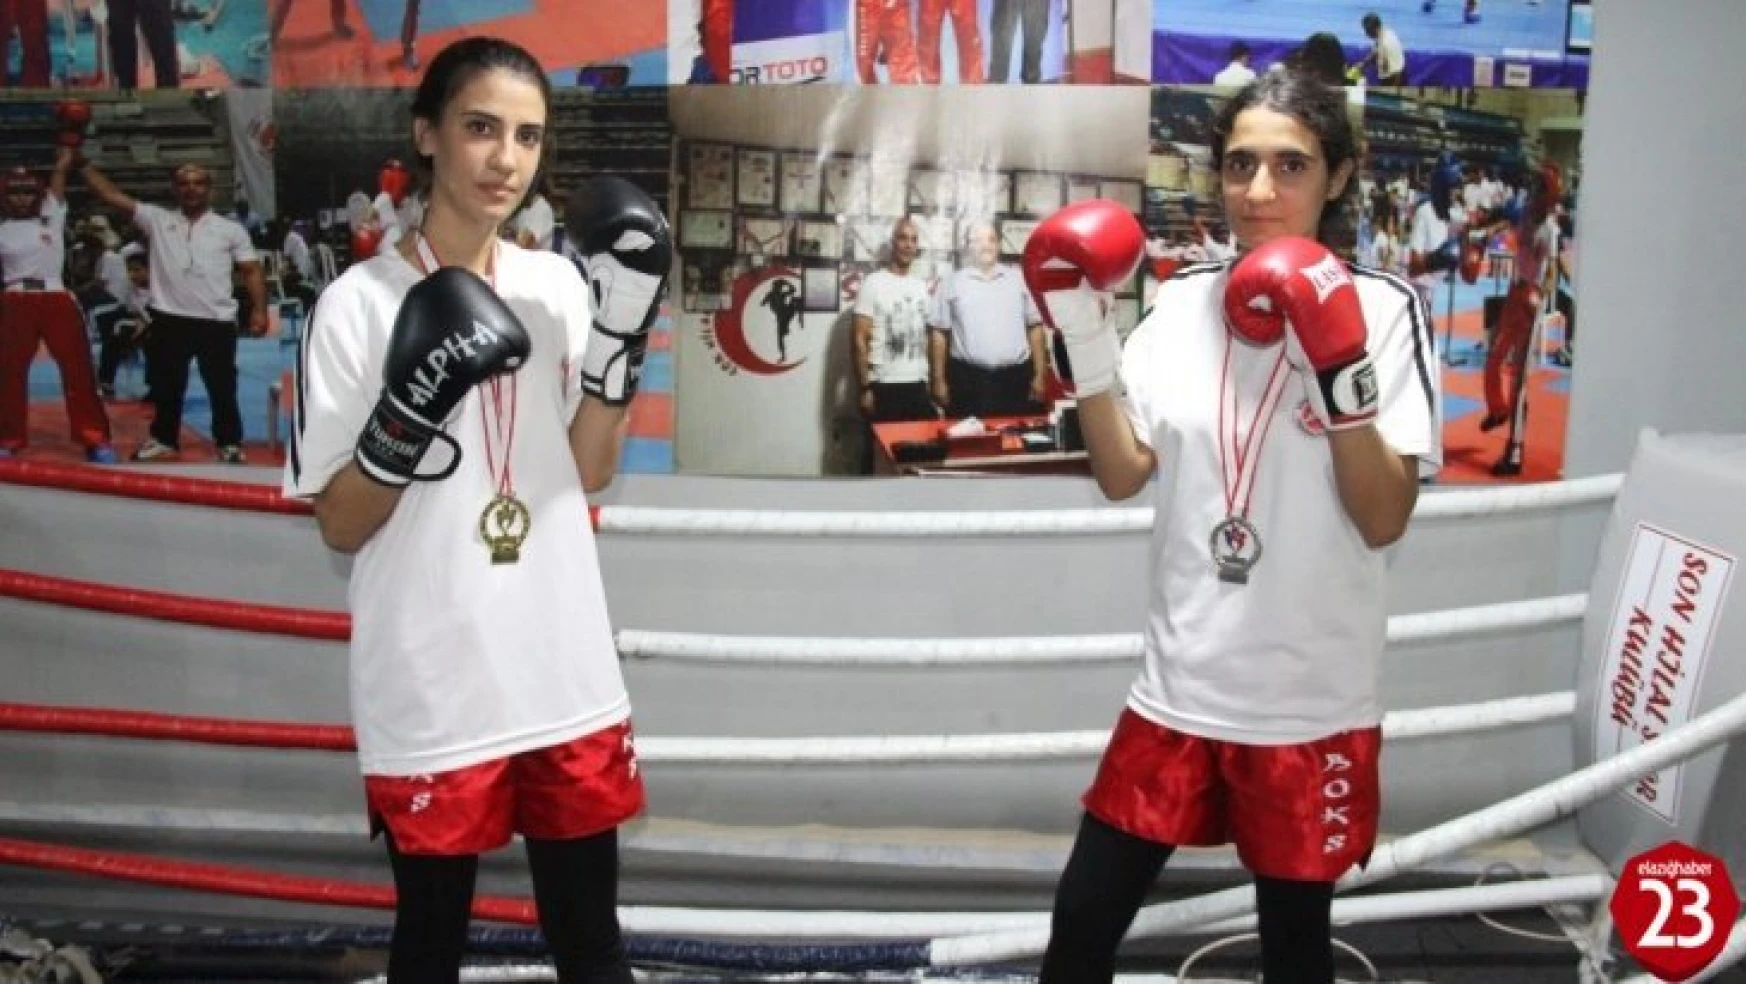 Kick Boksçu Kız Kardeşler, İlk Şampiyonadan Madalya İle Döndü